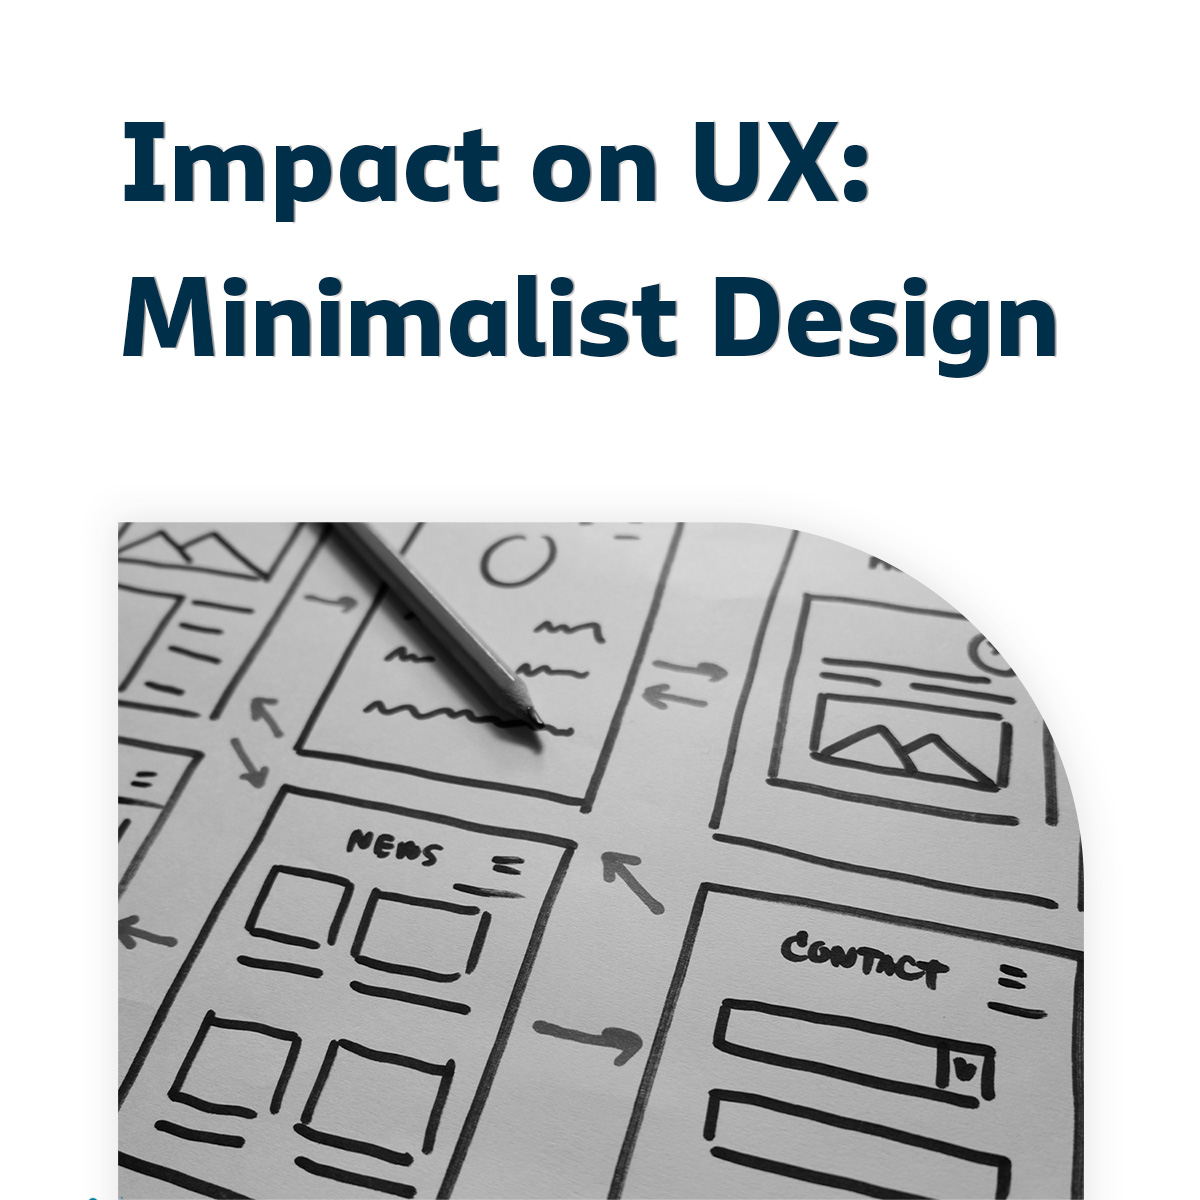 Impact on UX - Minimalist Design